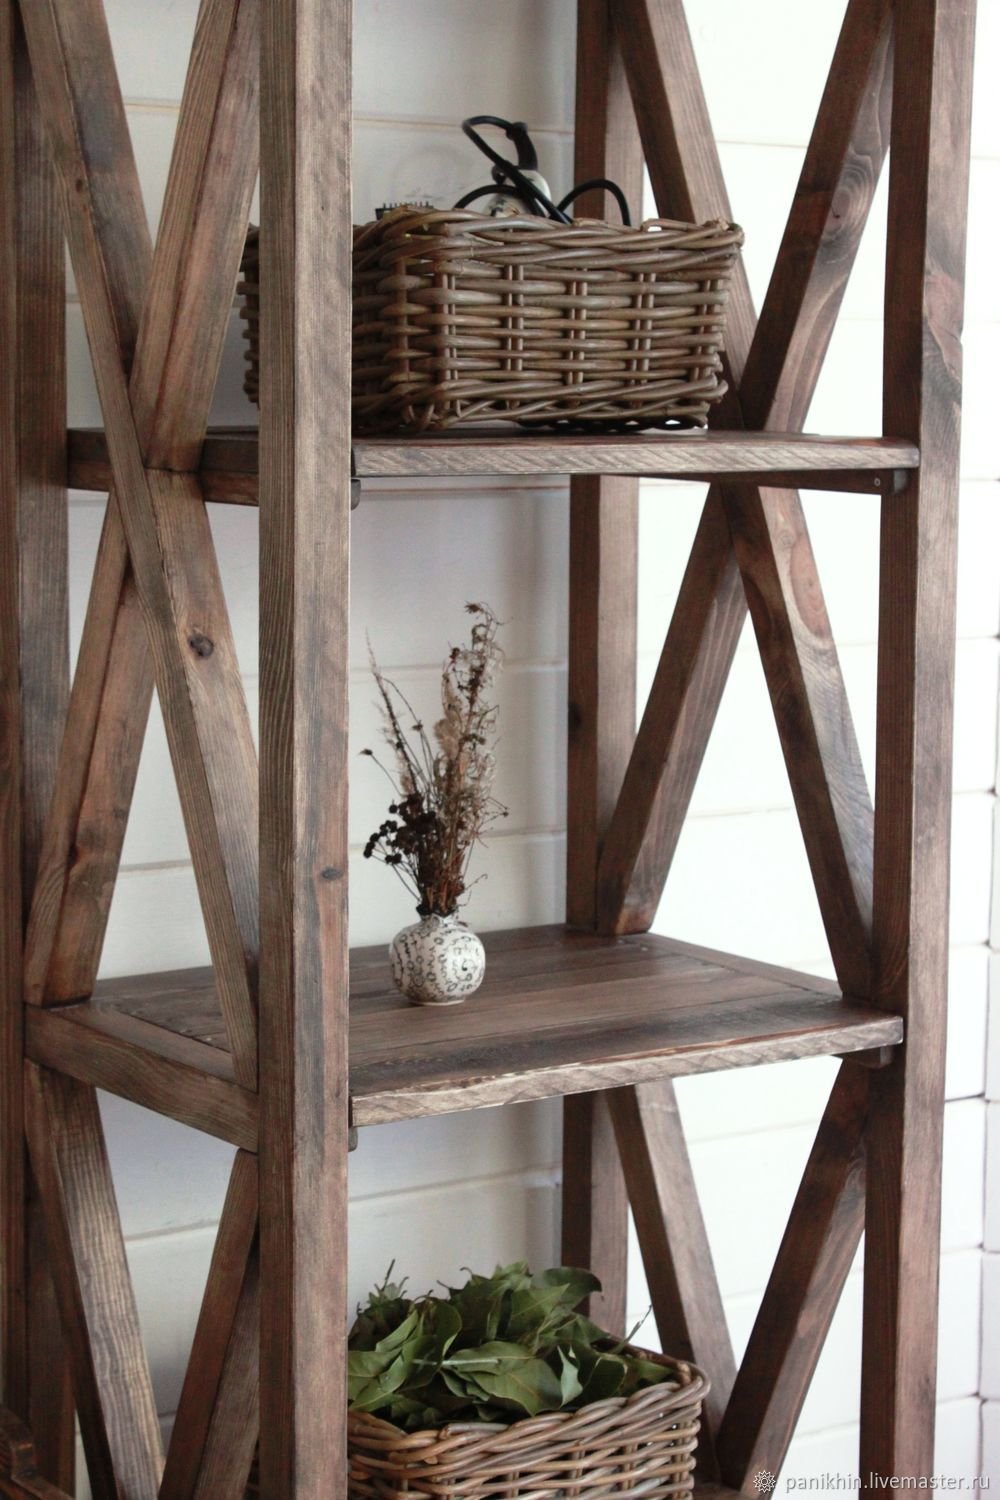 Этажерка деревянная для кухни